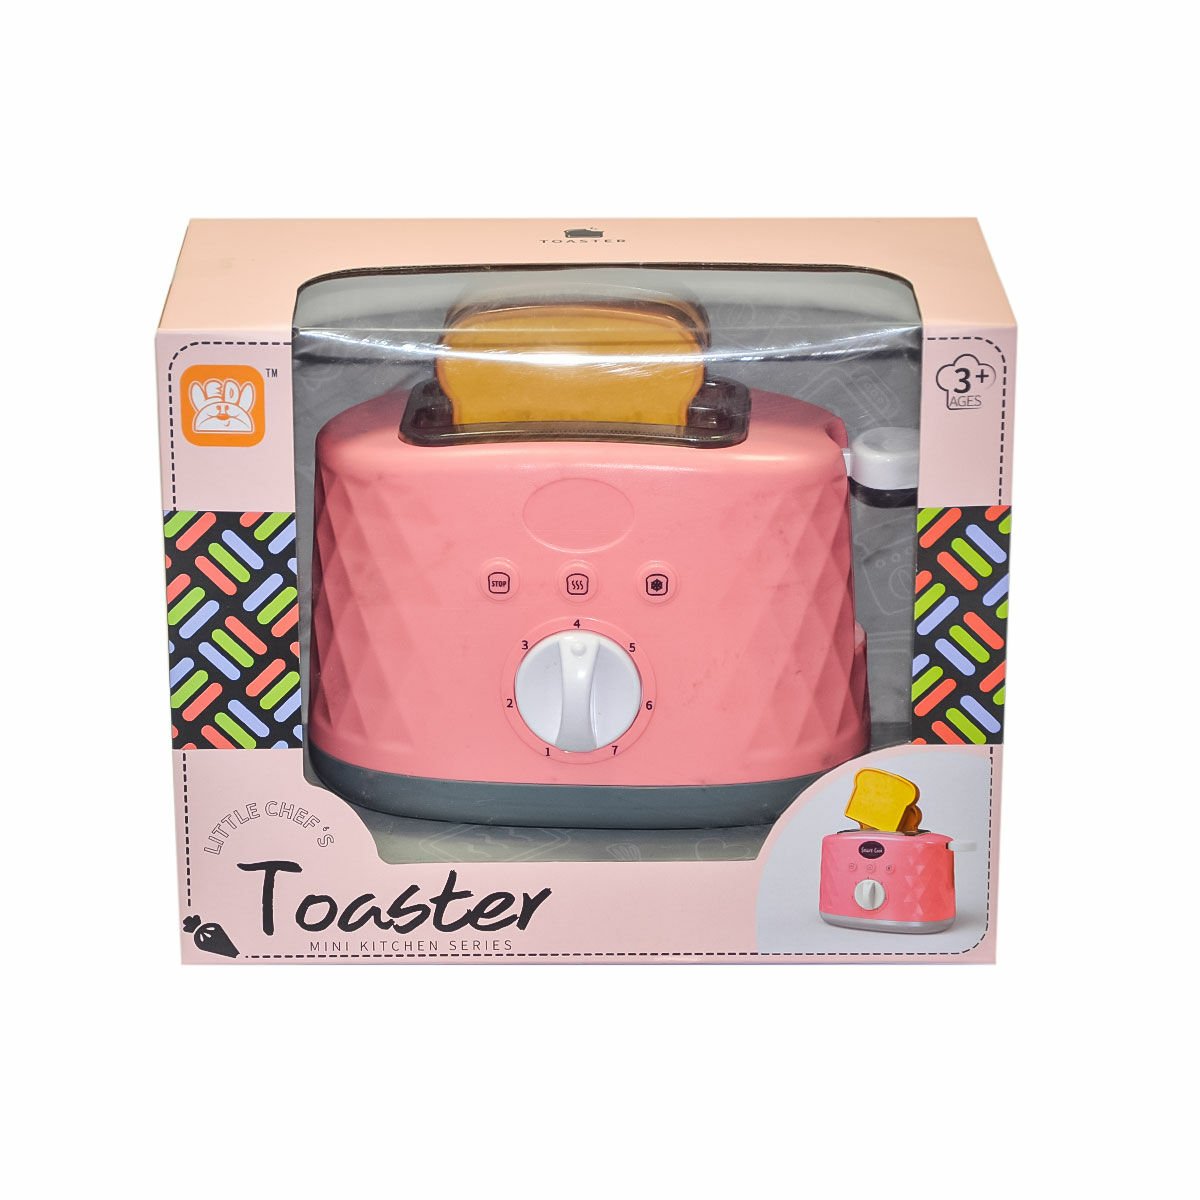 LD665A 665B Tost Makinesi Mutfak Oyuncağı - Birlik Toys